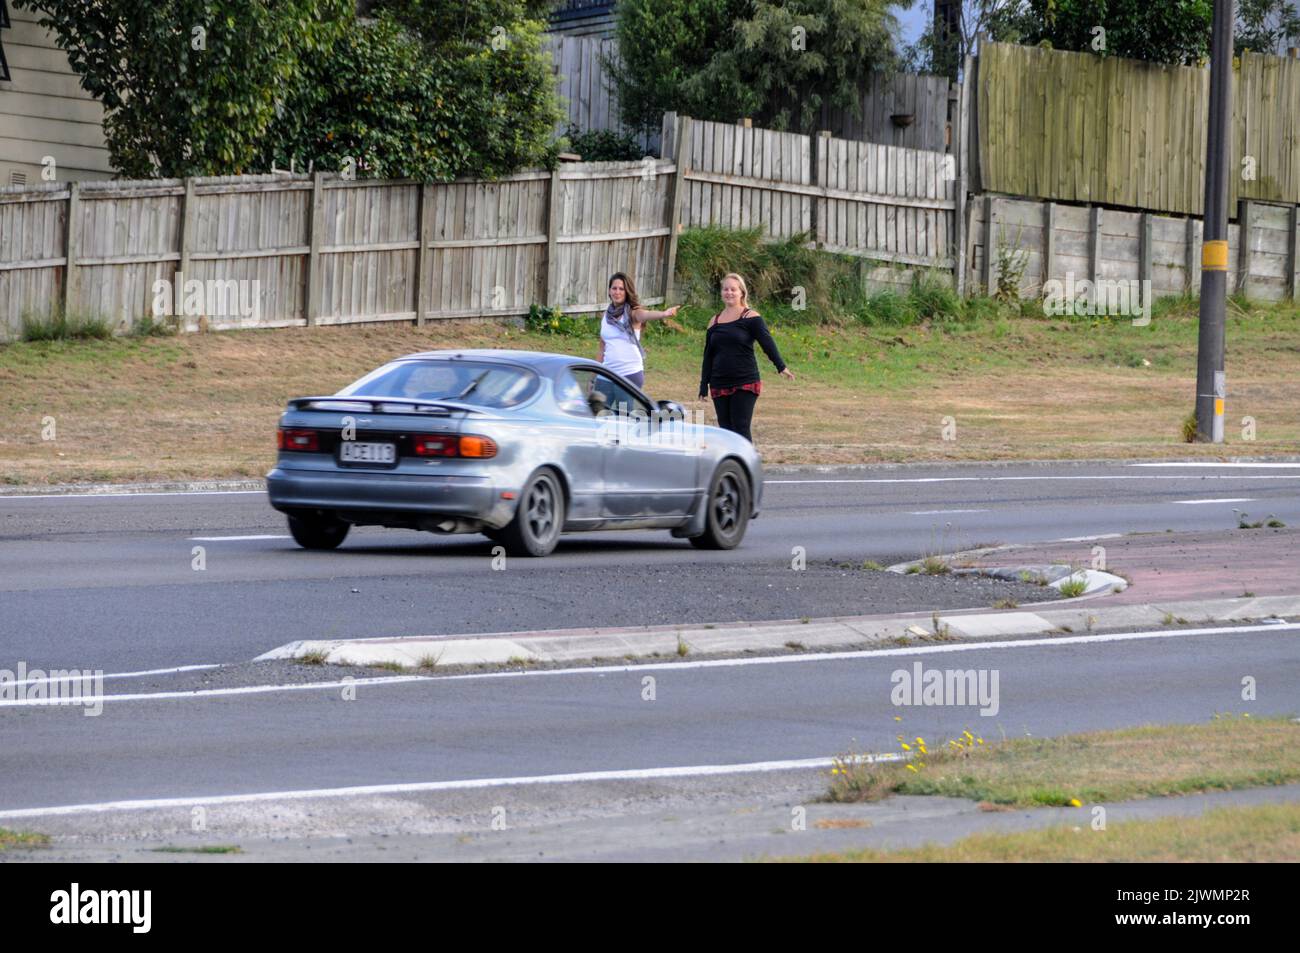 Dos jóvenes turistas se enganchan a hacer senderismo en una ajetreada carretera principal en Taupo, cerca del centro de la Isla del Norte de Nueva Zelanda. Foto de stock